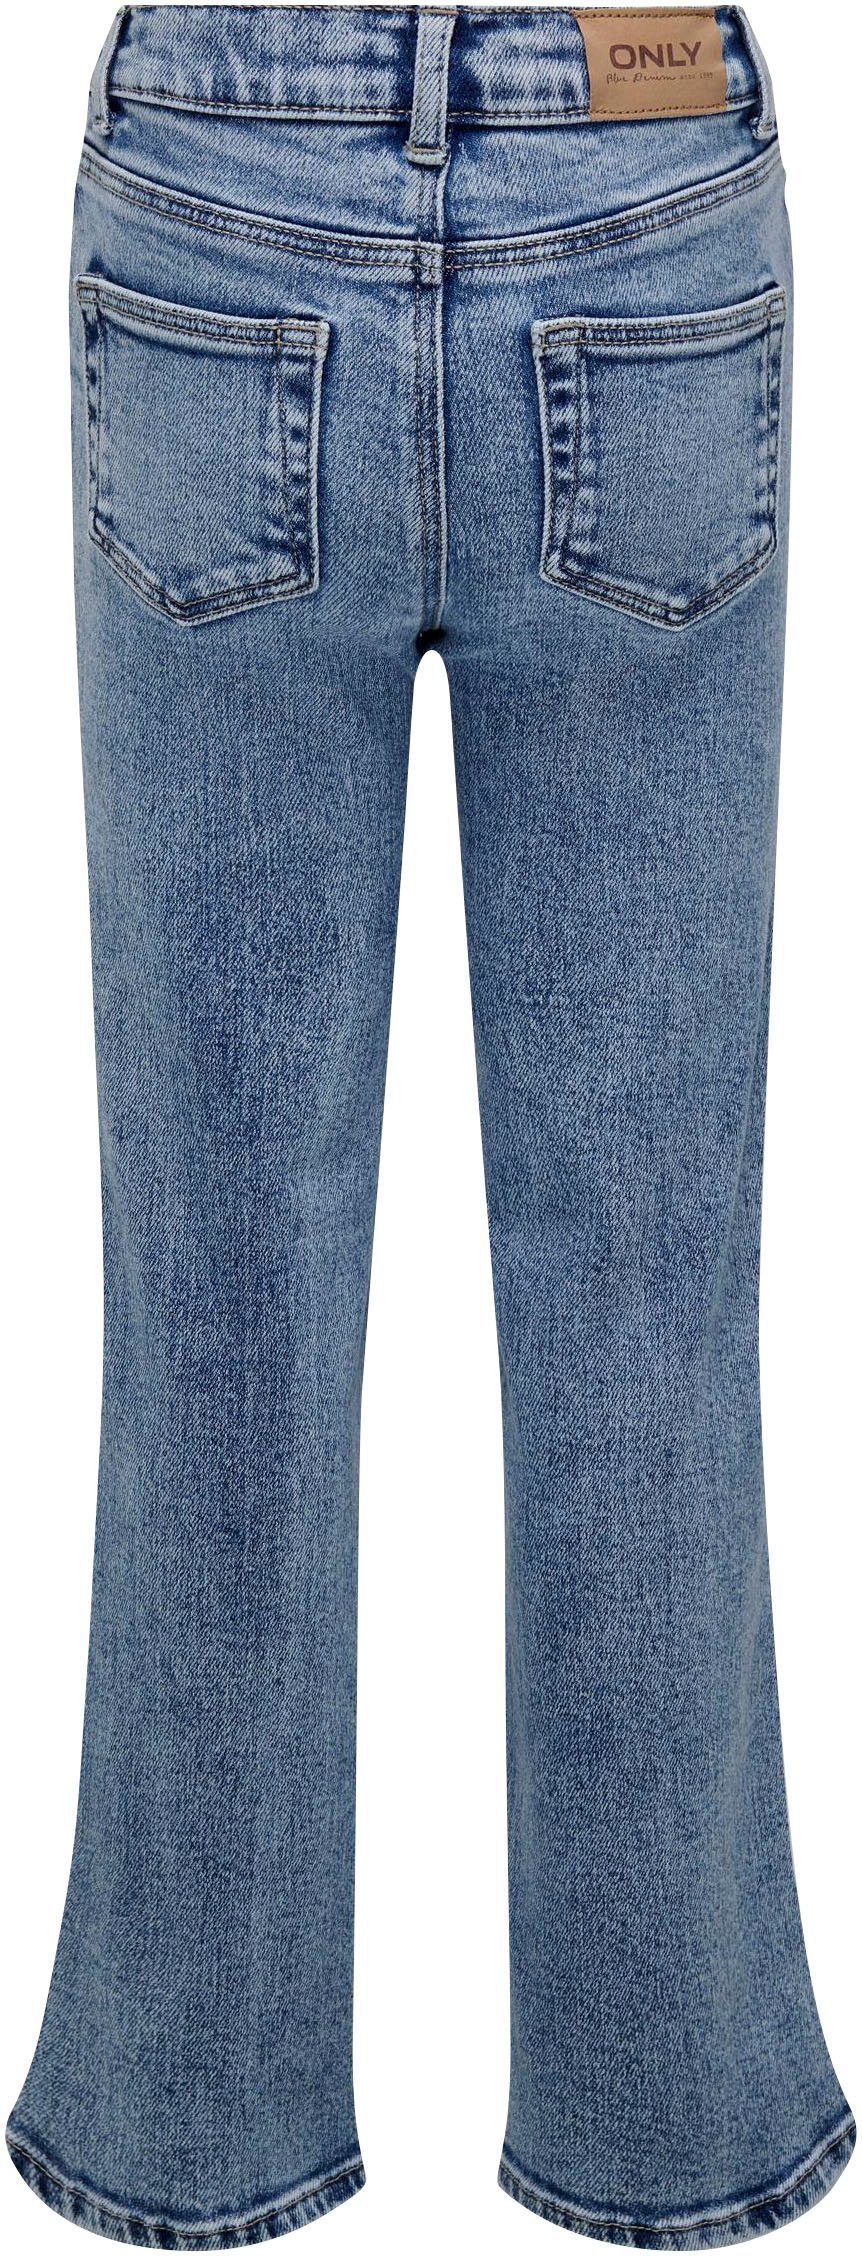 WIDE KOGJUICY 5-Pocket-Jeans DN KIDS LEG ONLY DEST